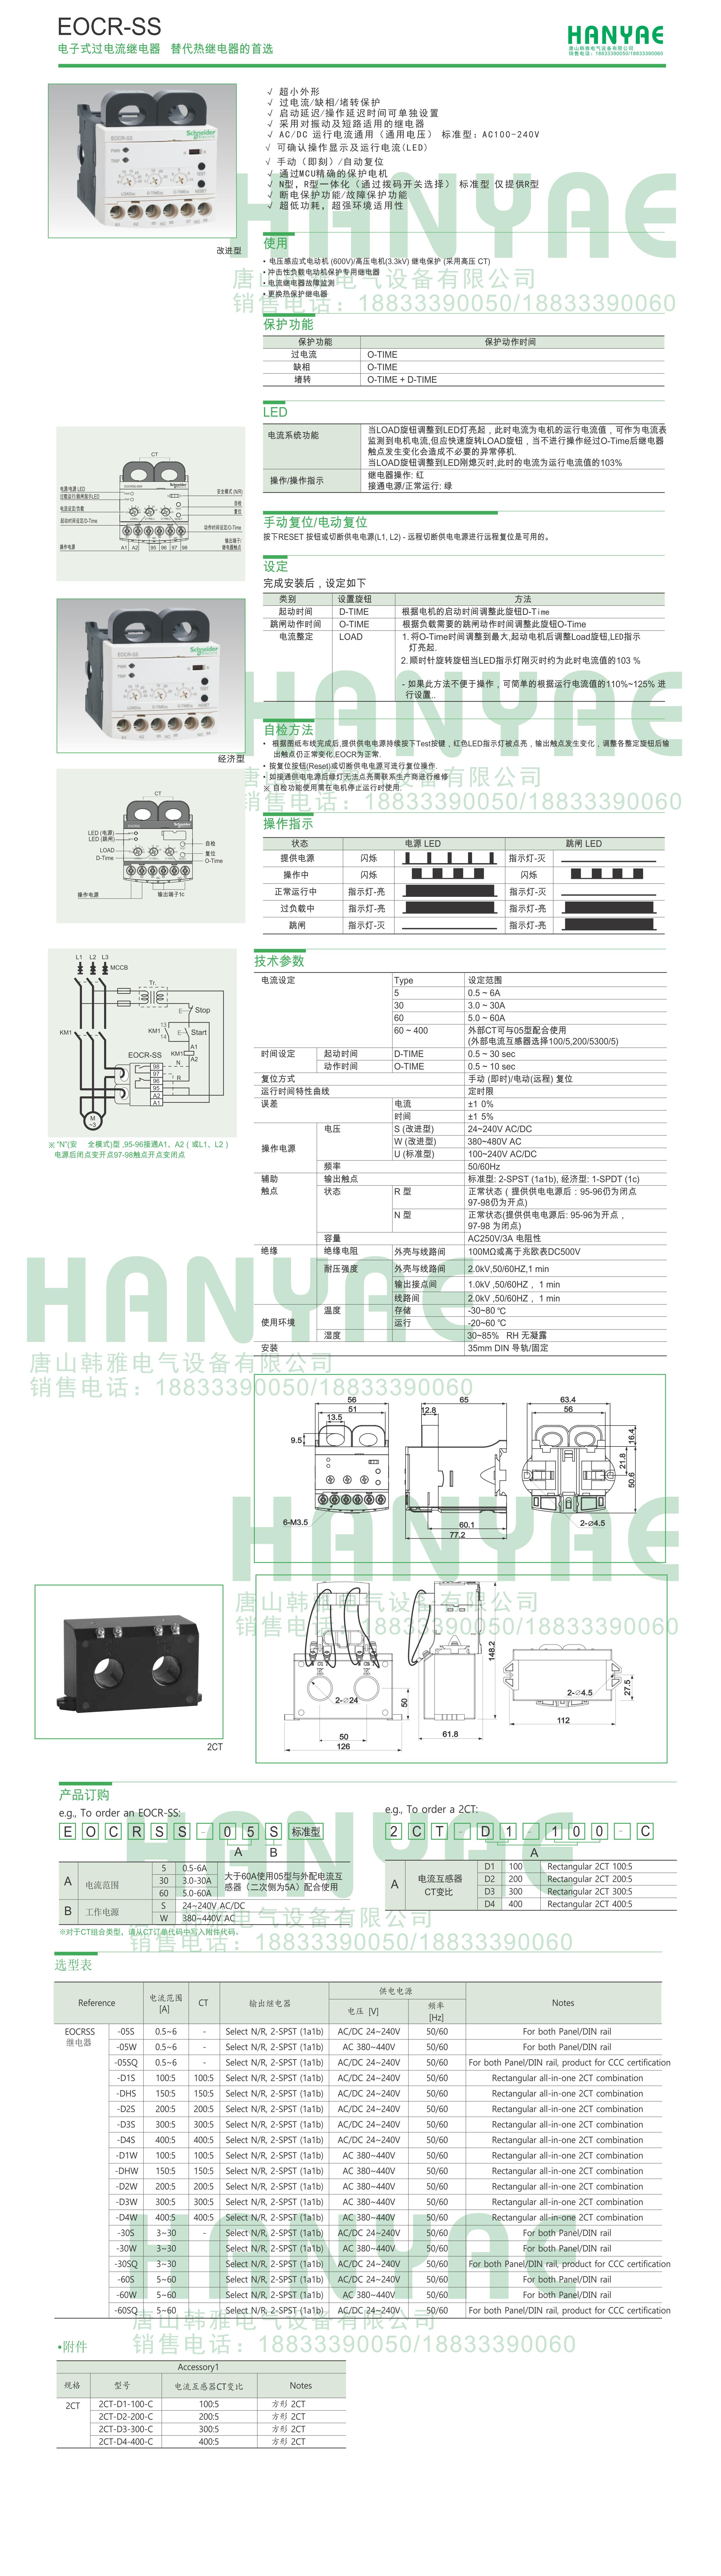 热继电器EOCRSS-05RV7 施耐德,韩国三和,韩国SAMWHA,电子式继电器,EOCR-SS